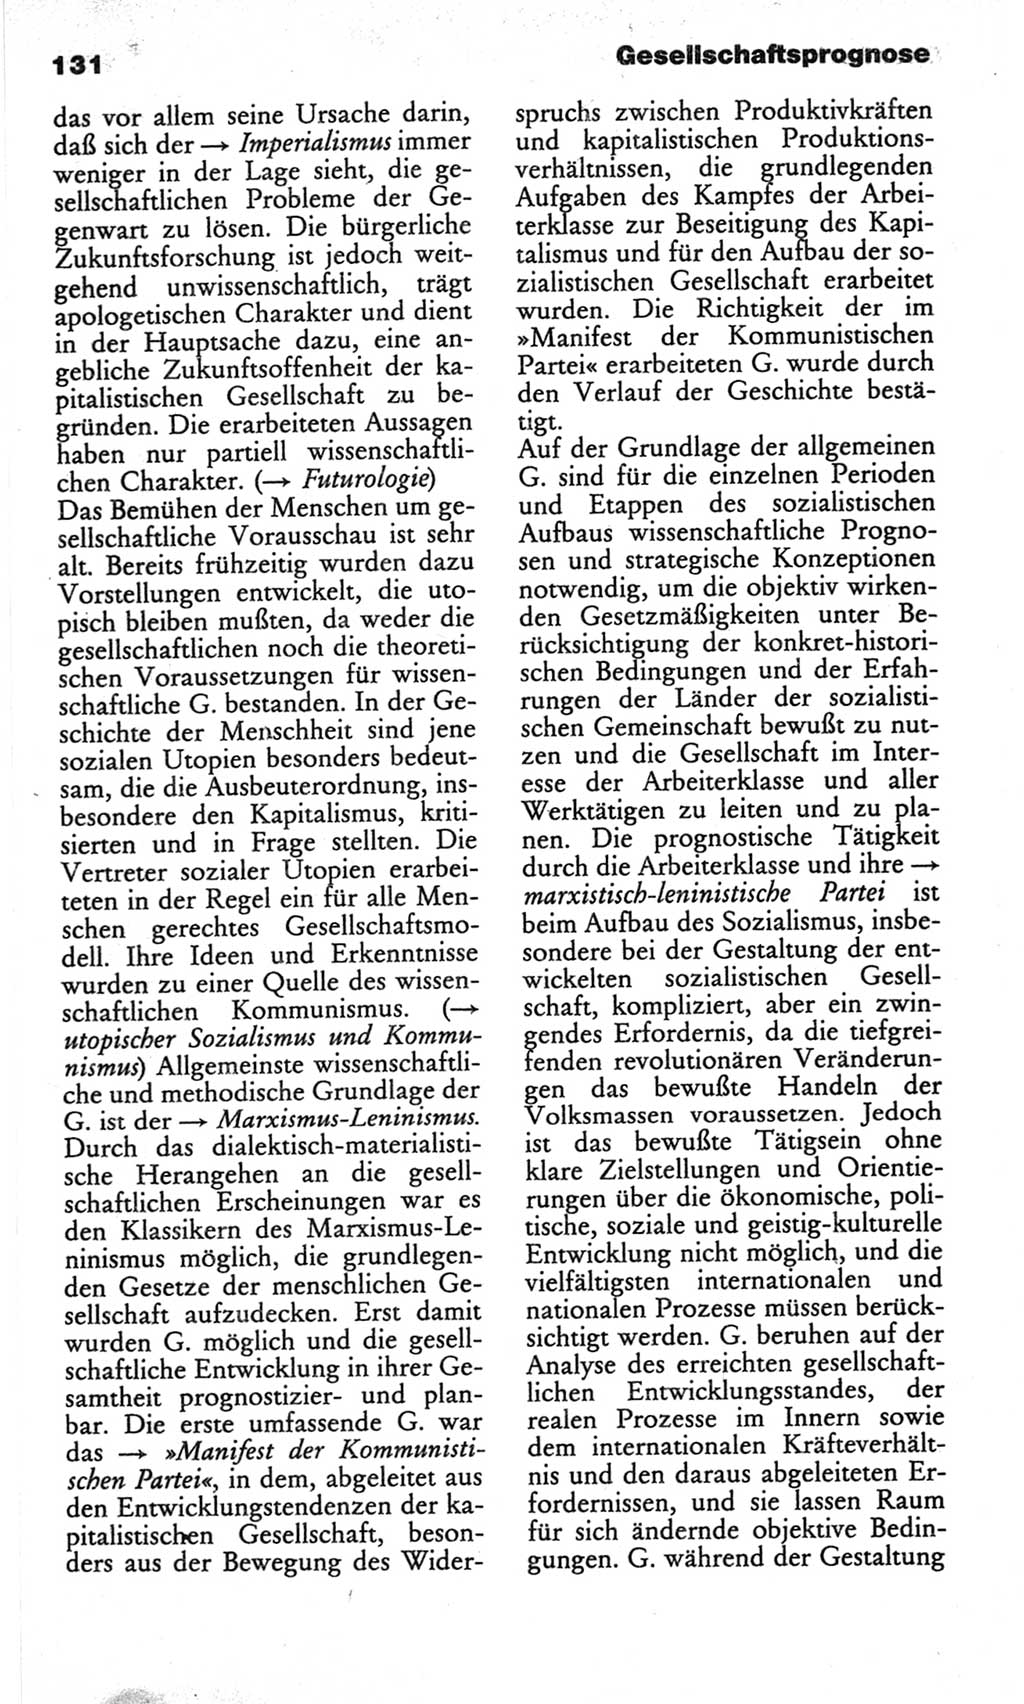 Wörterbuch des wissenschaftlichen Kommunismus [Deutsche Demokratische Republik (DDR)] 1982, Seite 131 (Wb. wiss. Komm. DDR 1982, S. 131)